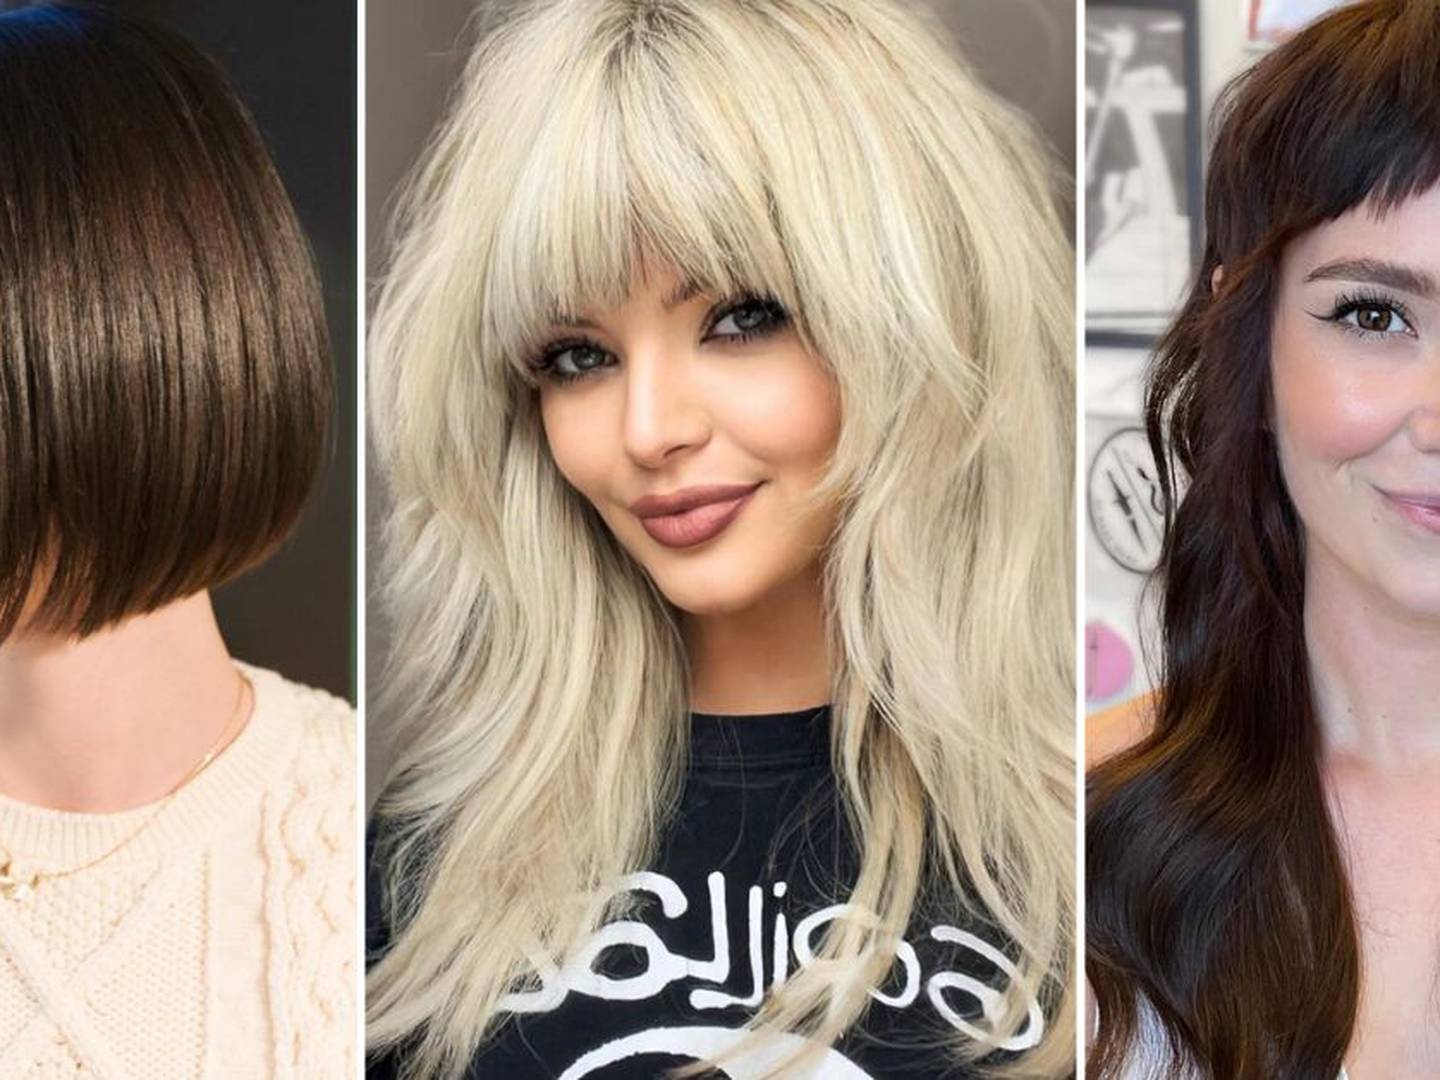 5 cortes de pelo para lucir moderna en otoño si tienes más de 30